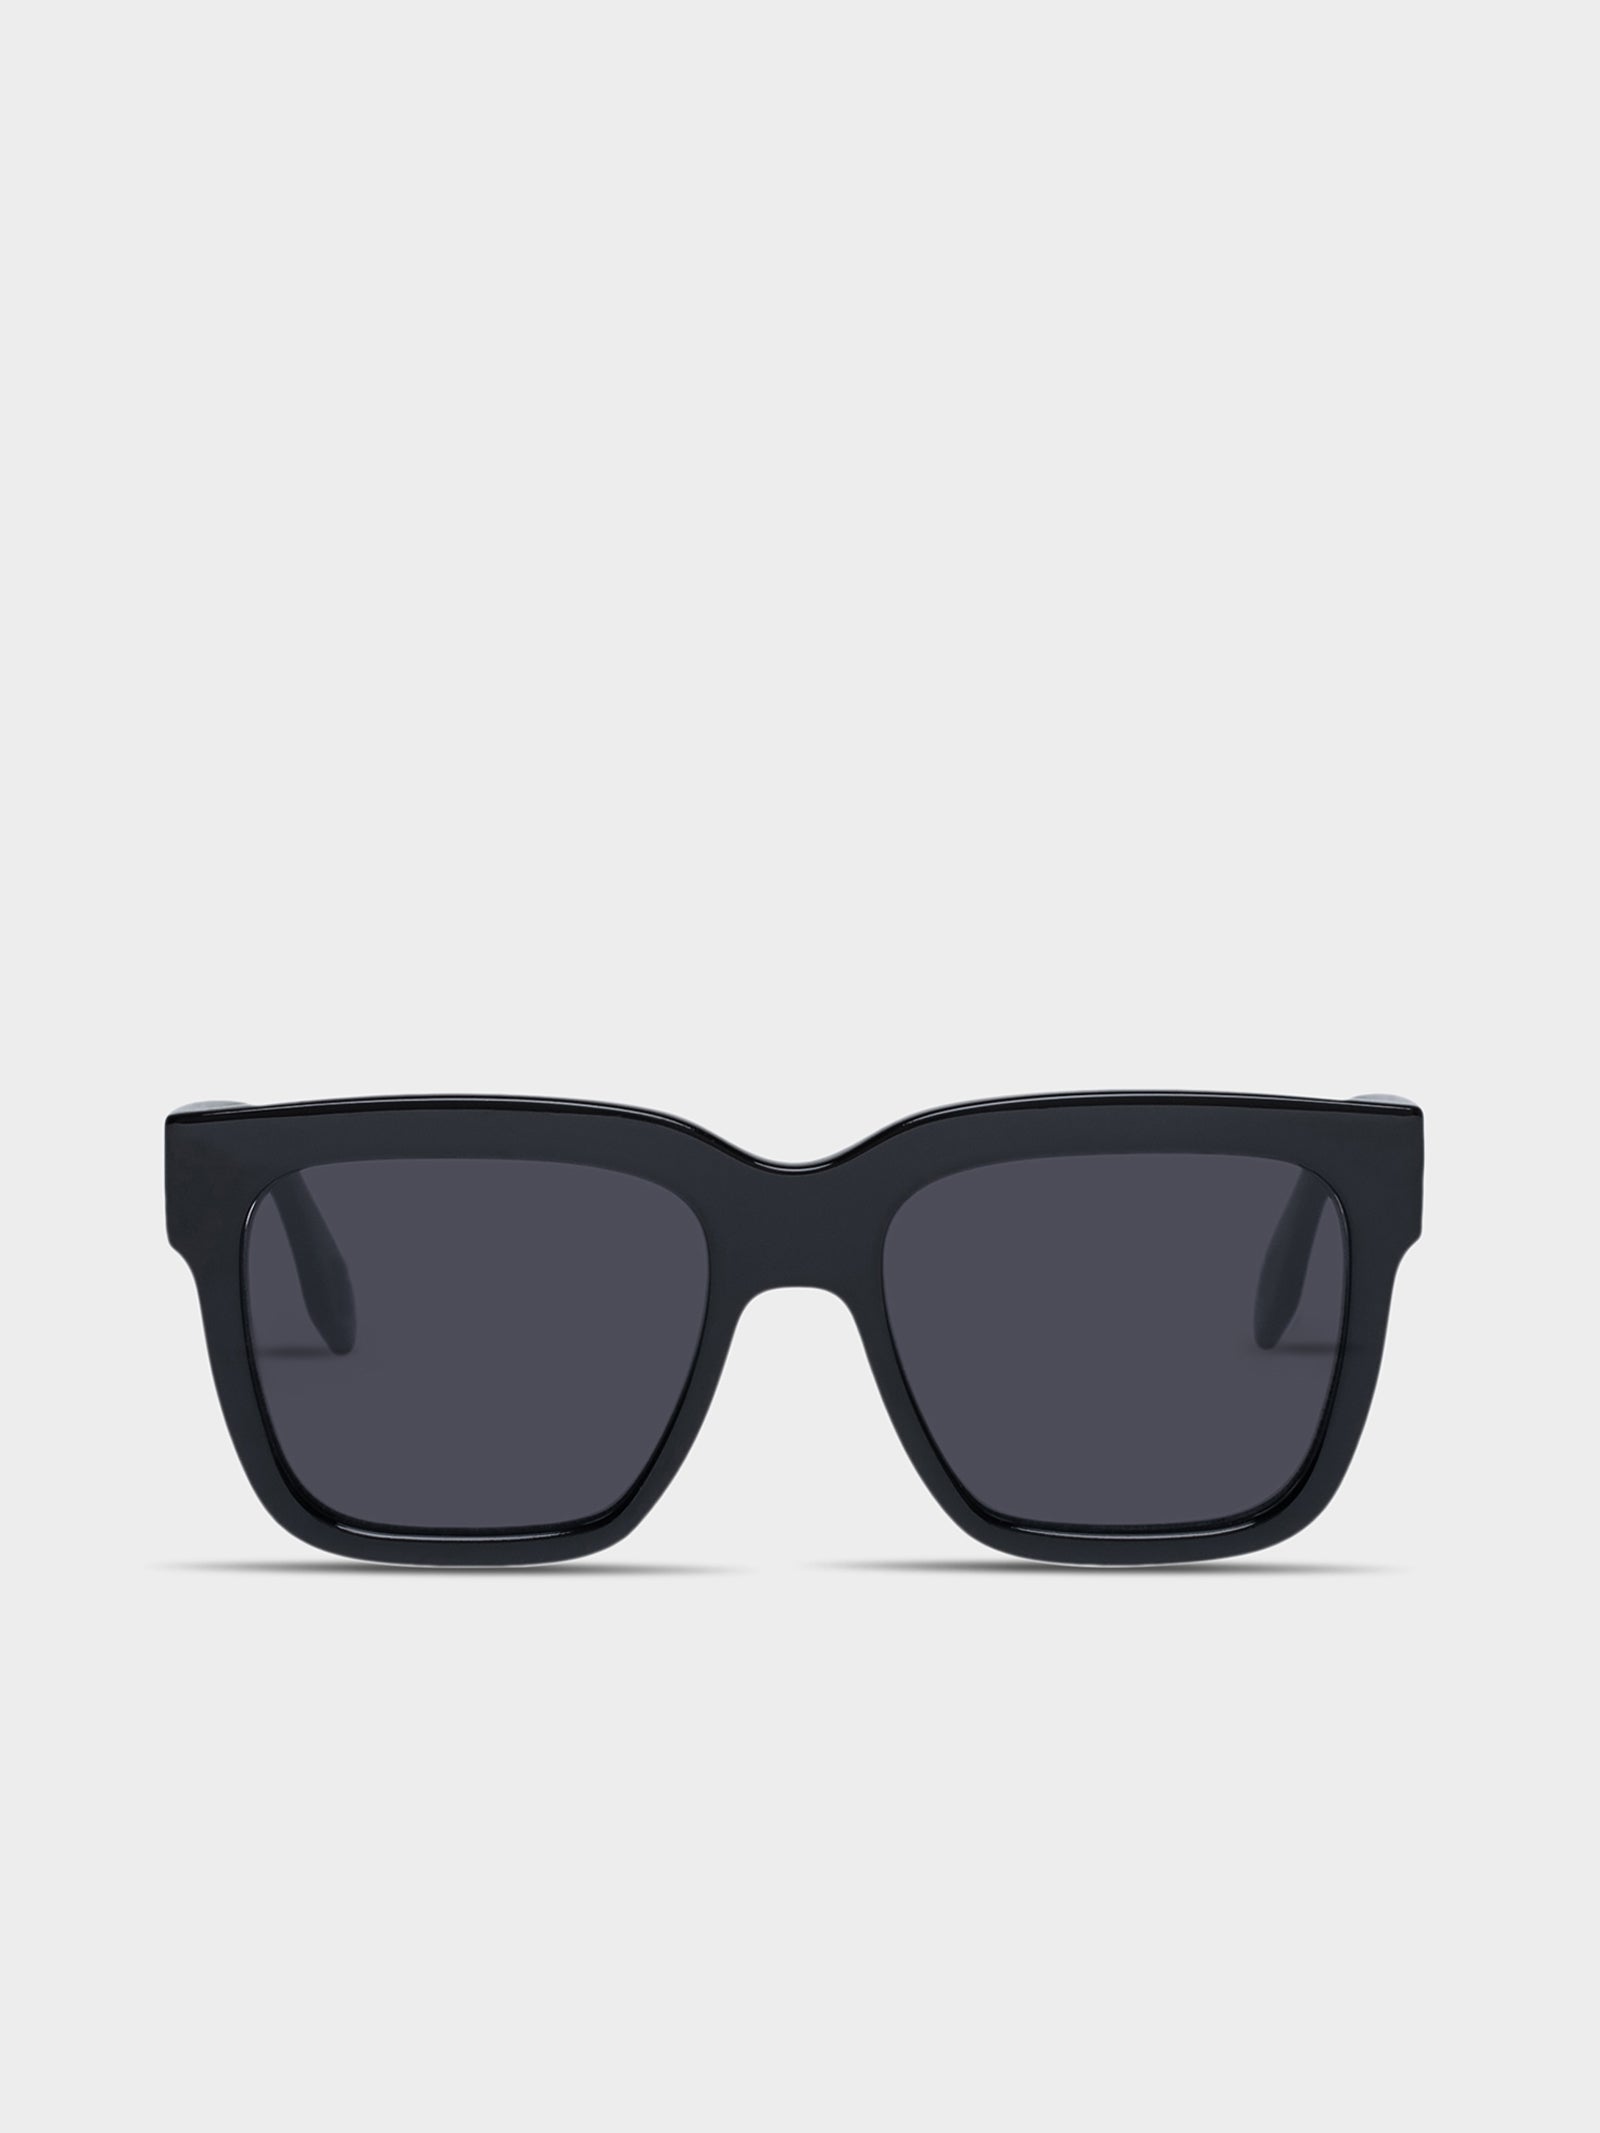 Tradeoff Sunglasses in Black Smoke Mono - Glue Store